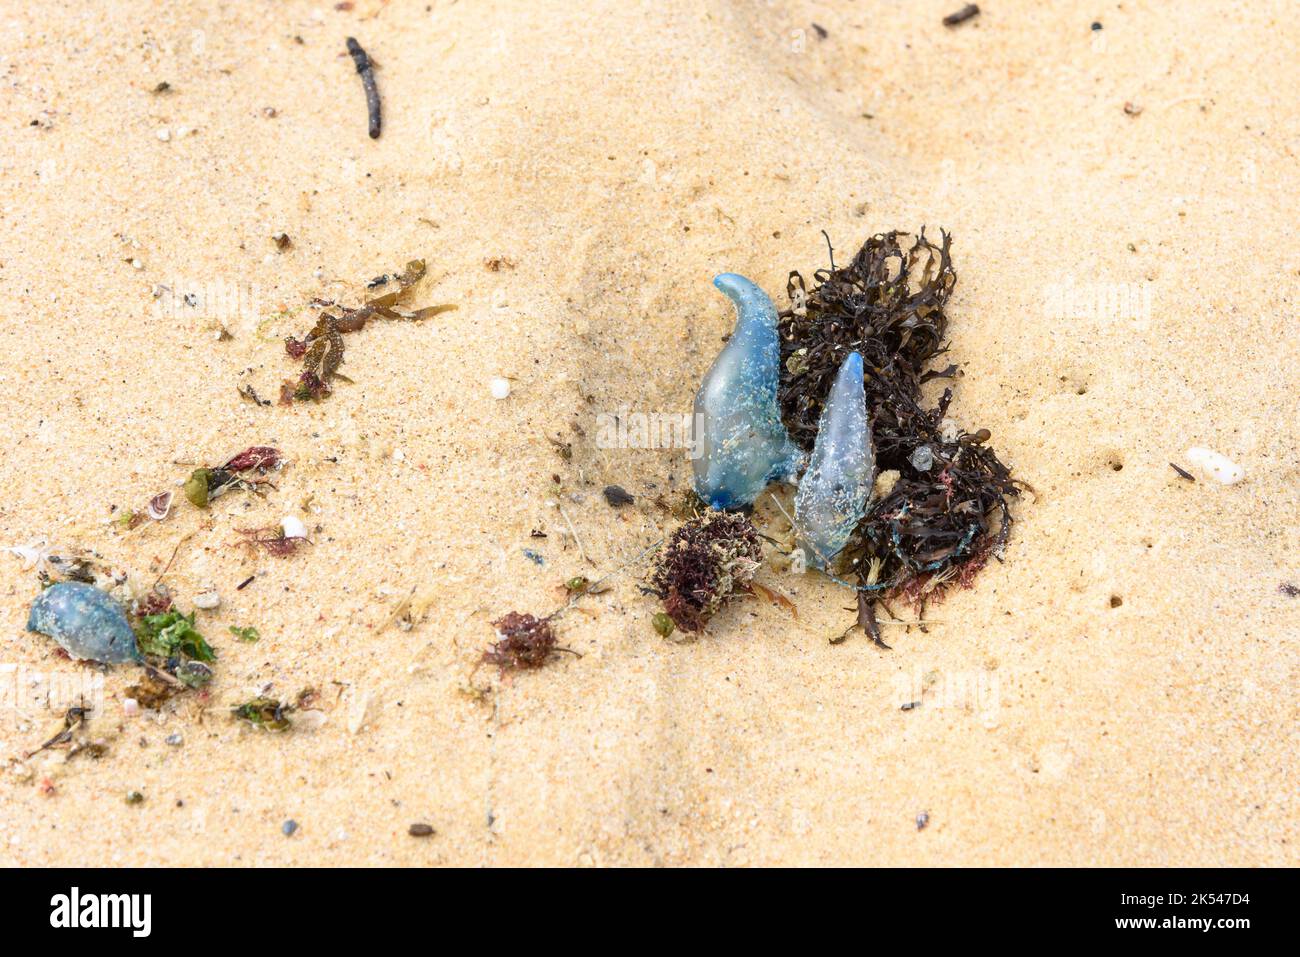 Lavage des bouteilles bleues de Man o' Wars portugais sur le sable à Maroubra Beach, Sydney, Australie Banque D'Images